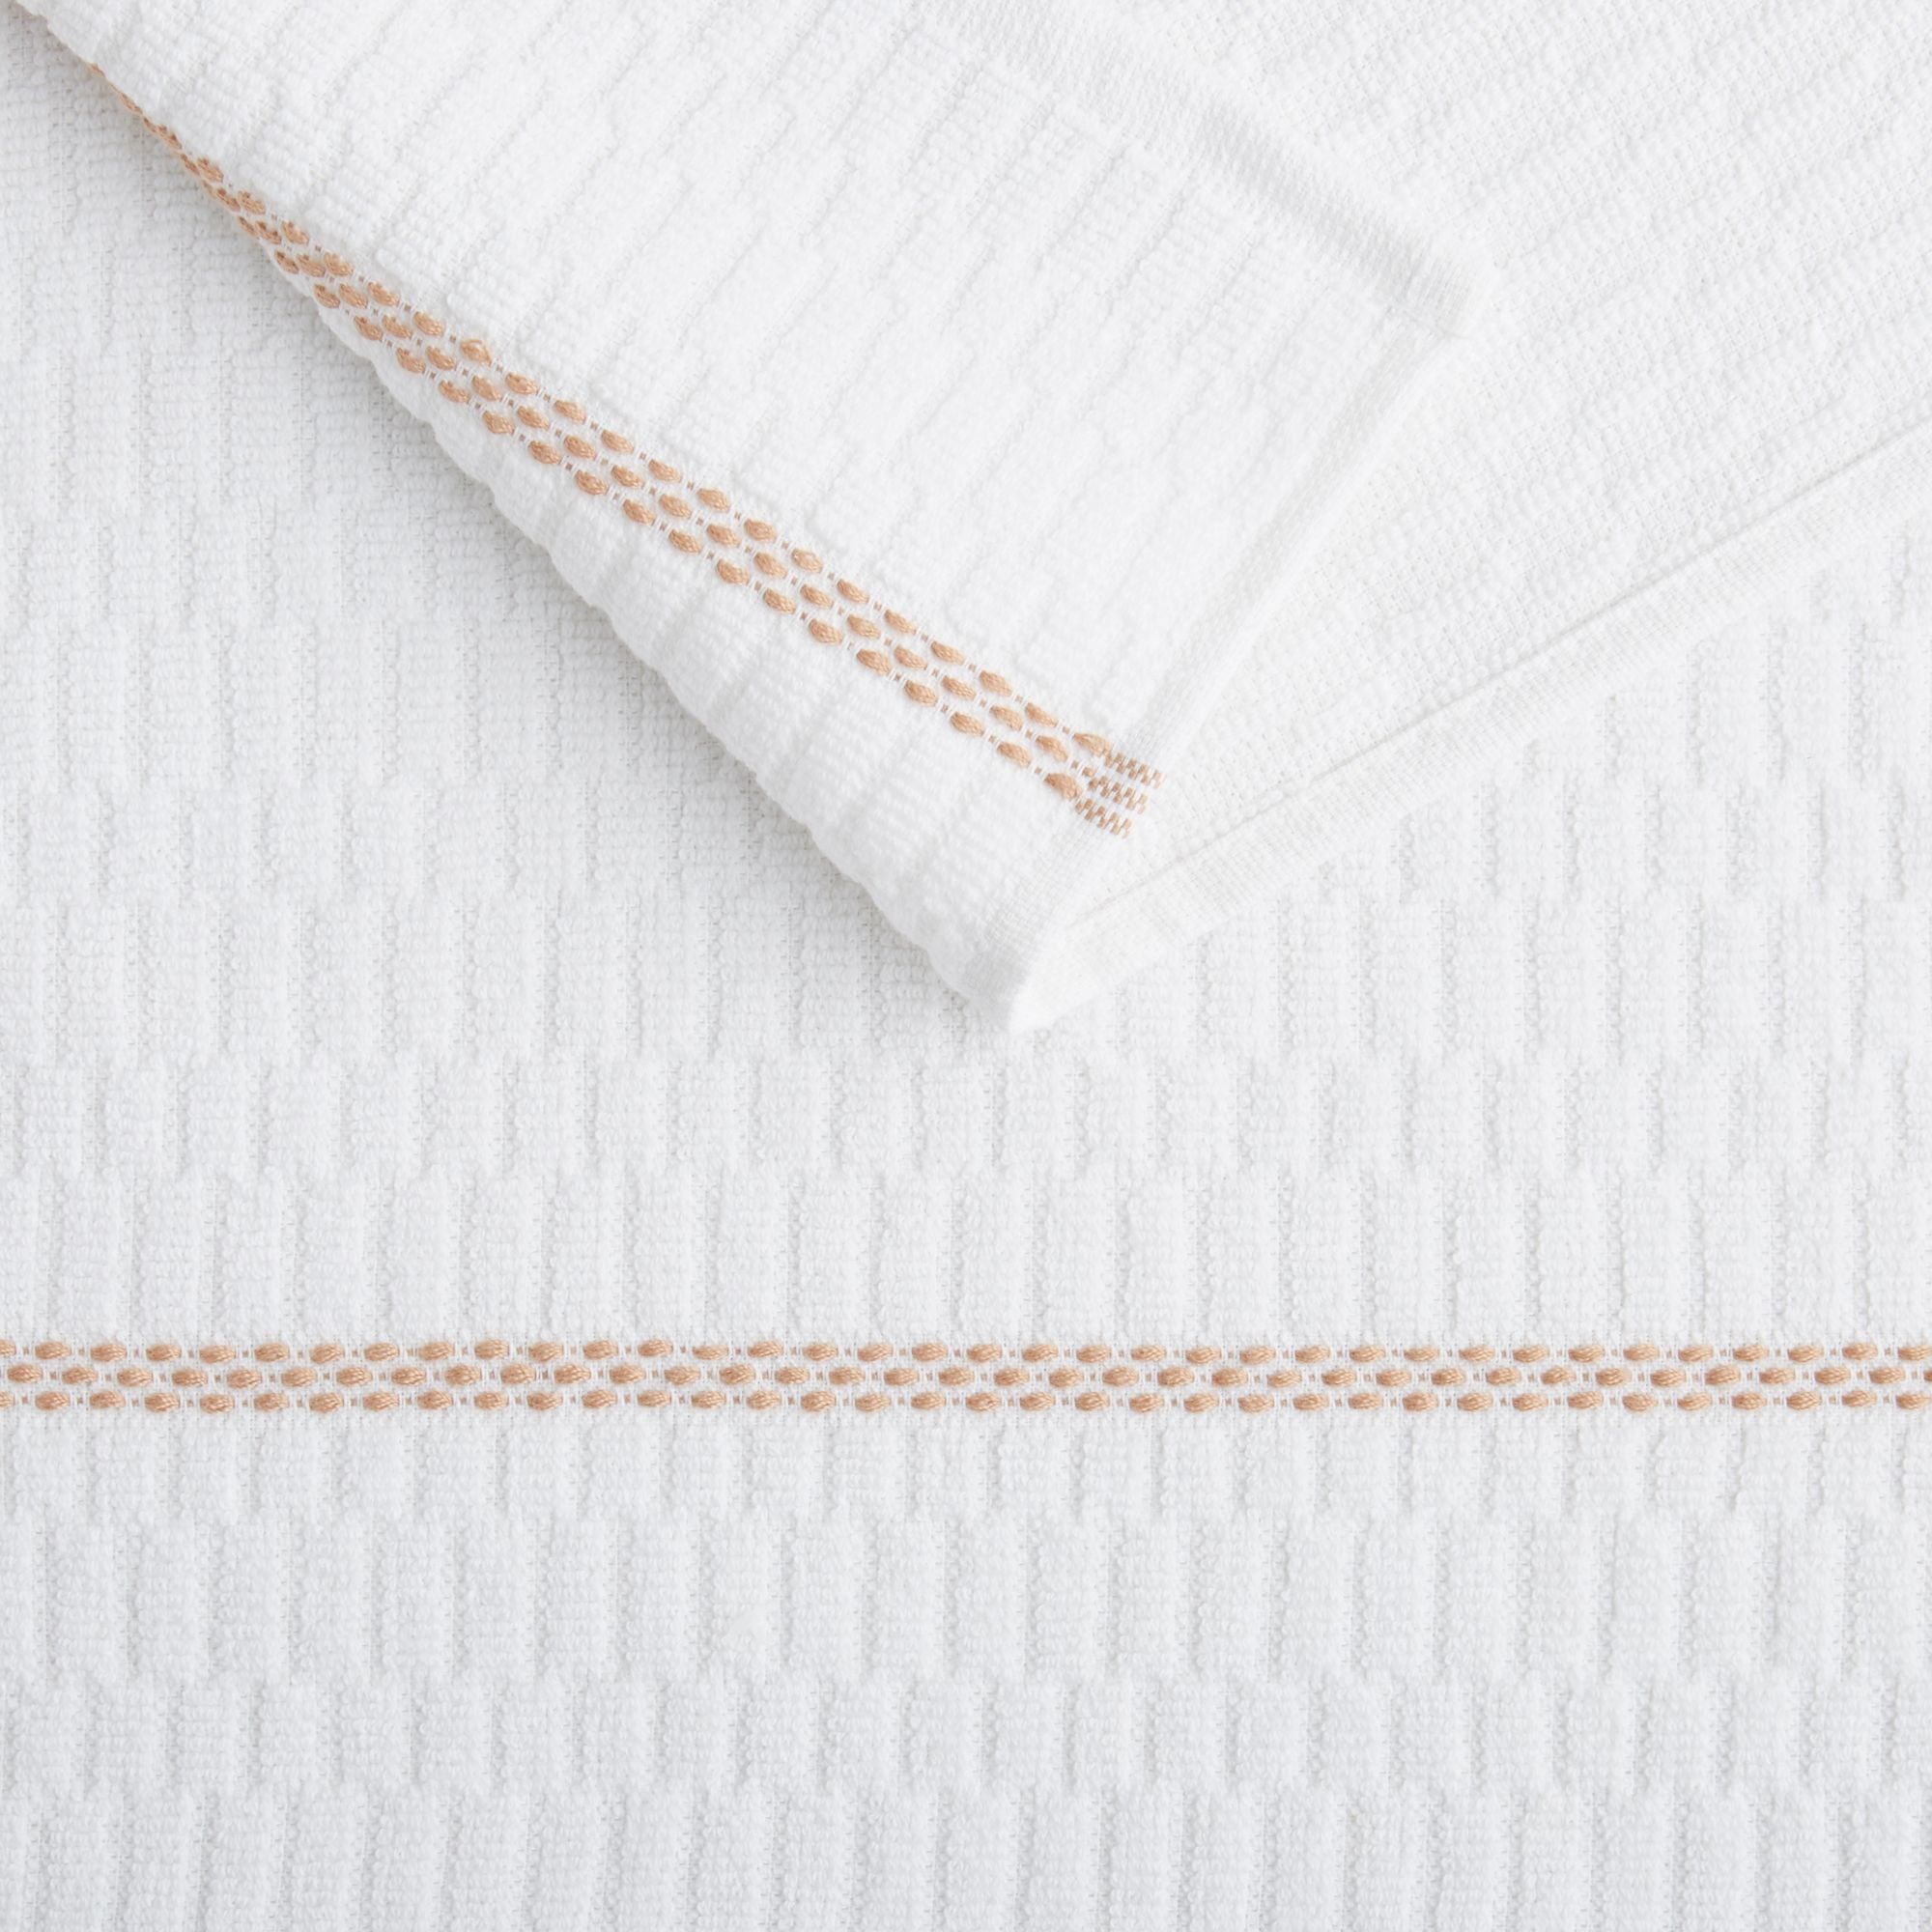 Clorox Clorox White & Beige Checkerboard-Accent Kitchen Towel